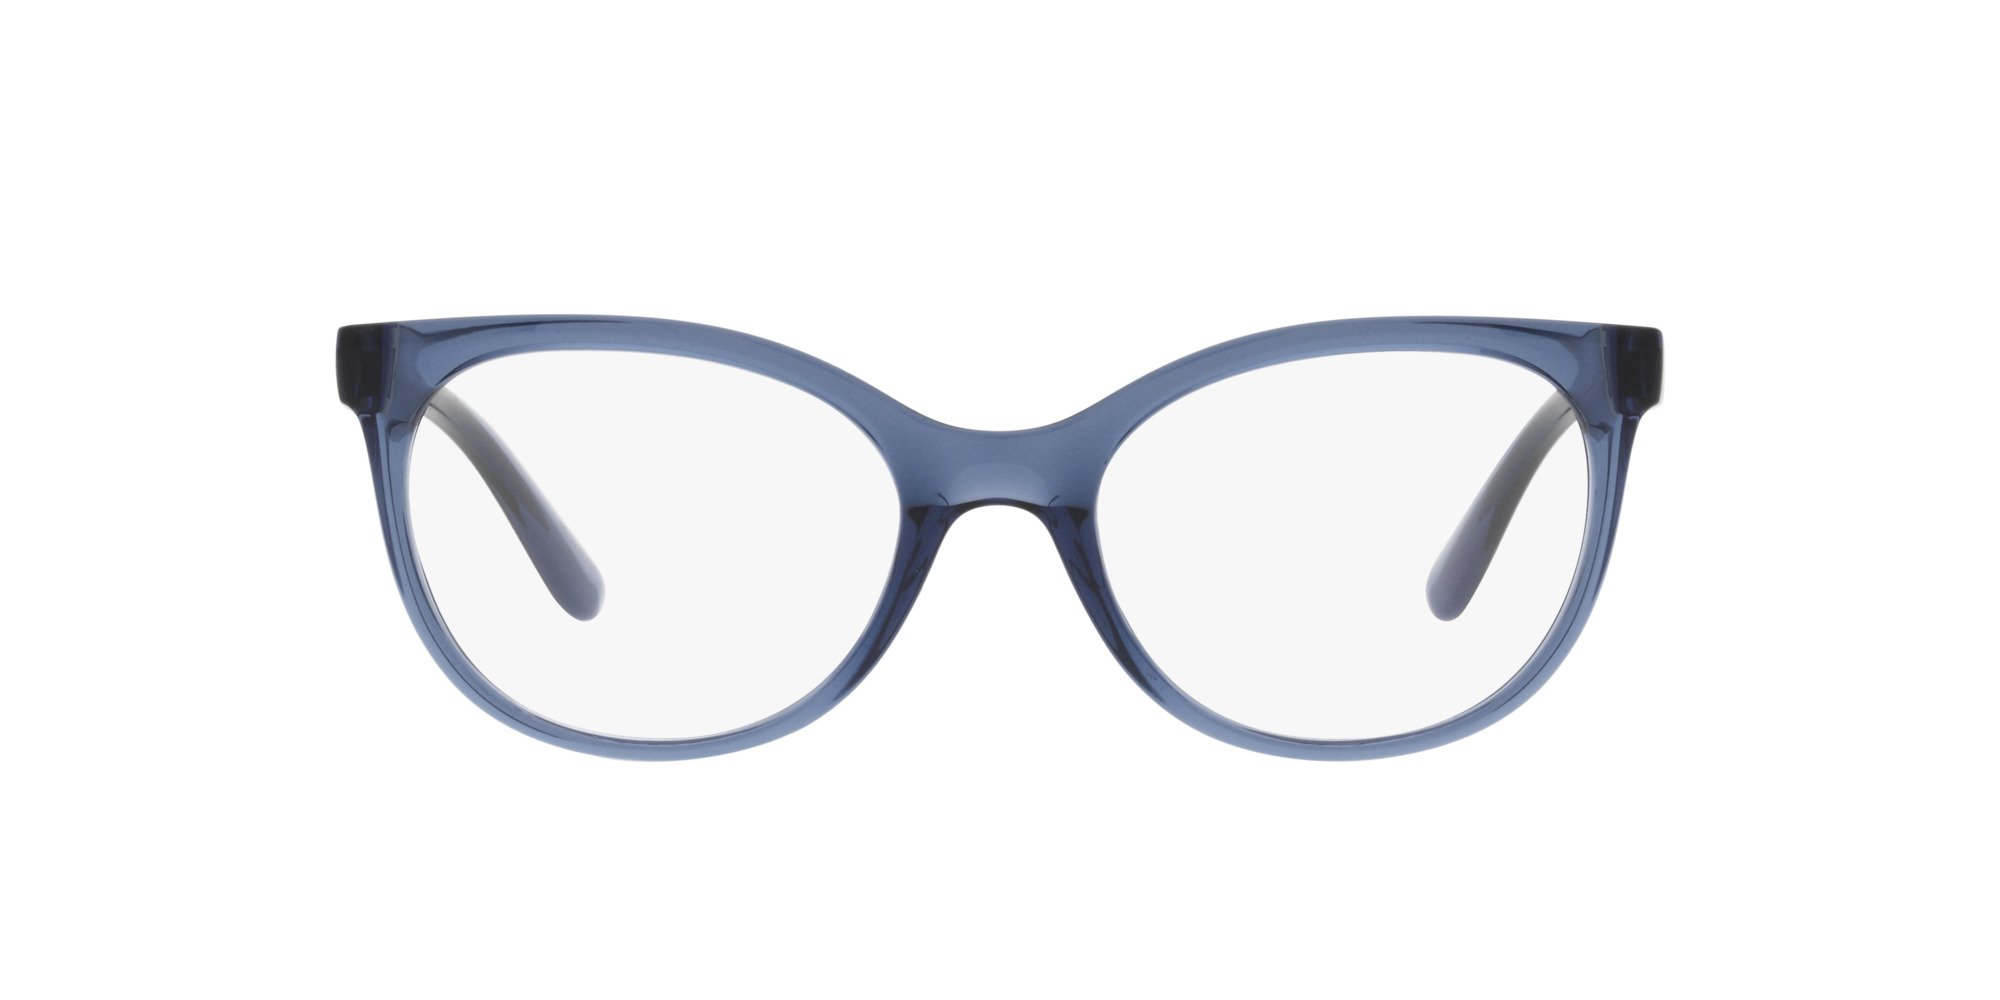 Das Bild zeigt die Korrektionsbrille DG5084 3398 von der Marke D&G in blau.